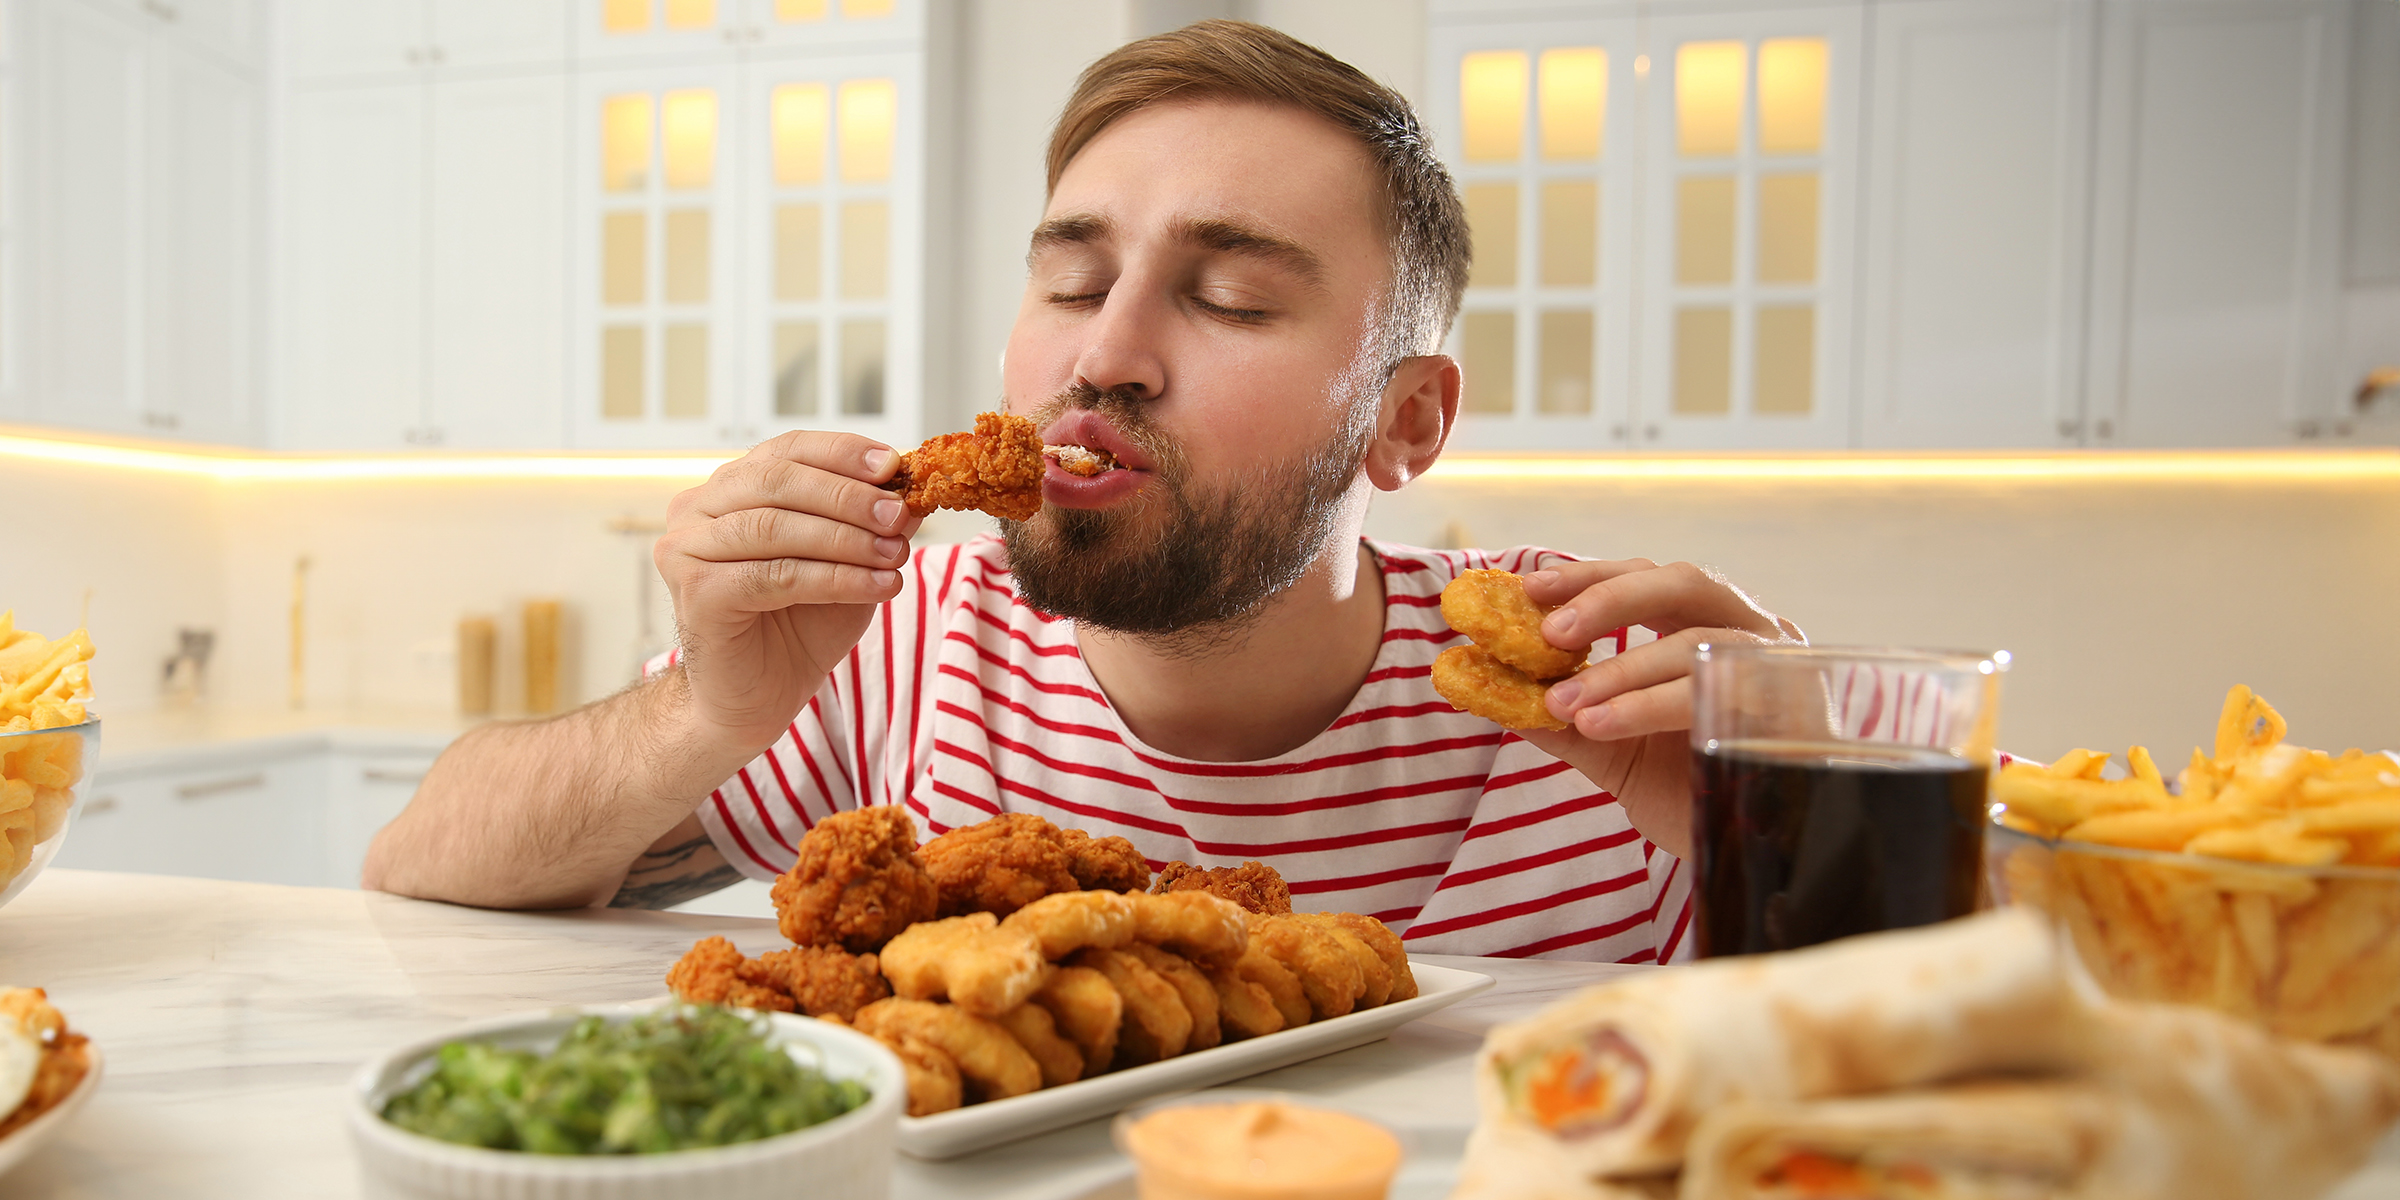 Mann beim Essen | Quelle: Shutterstock